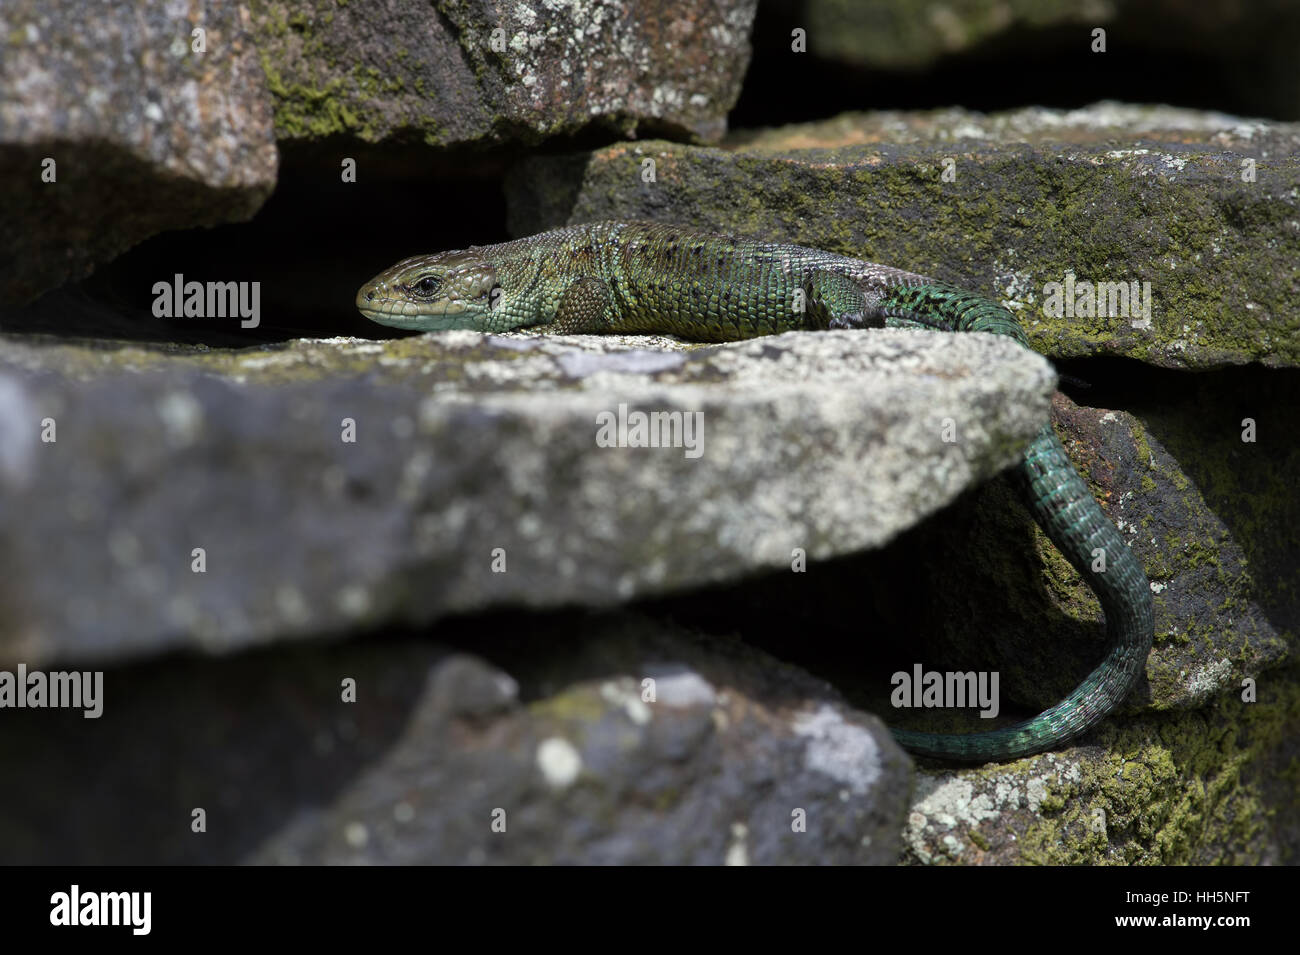 Common Lizard (Zootoca vivipara) Stock Photo